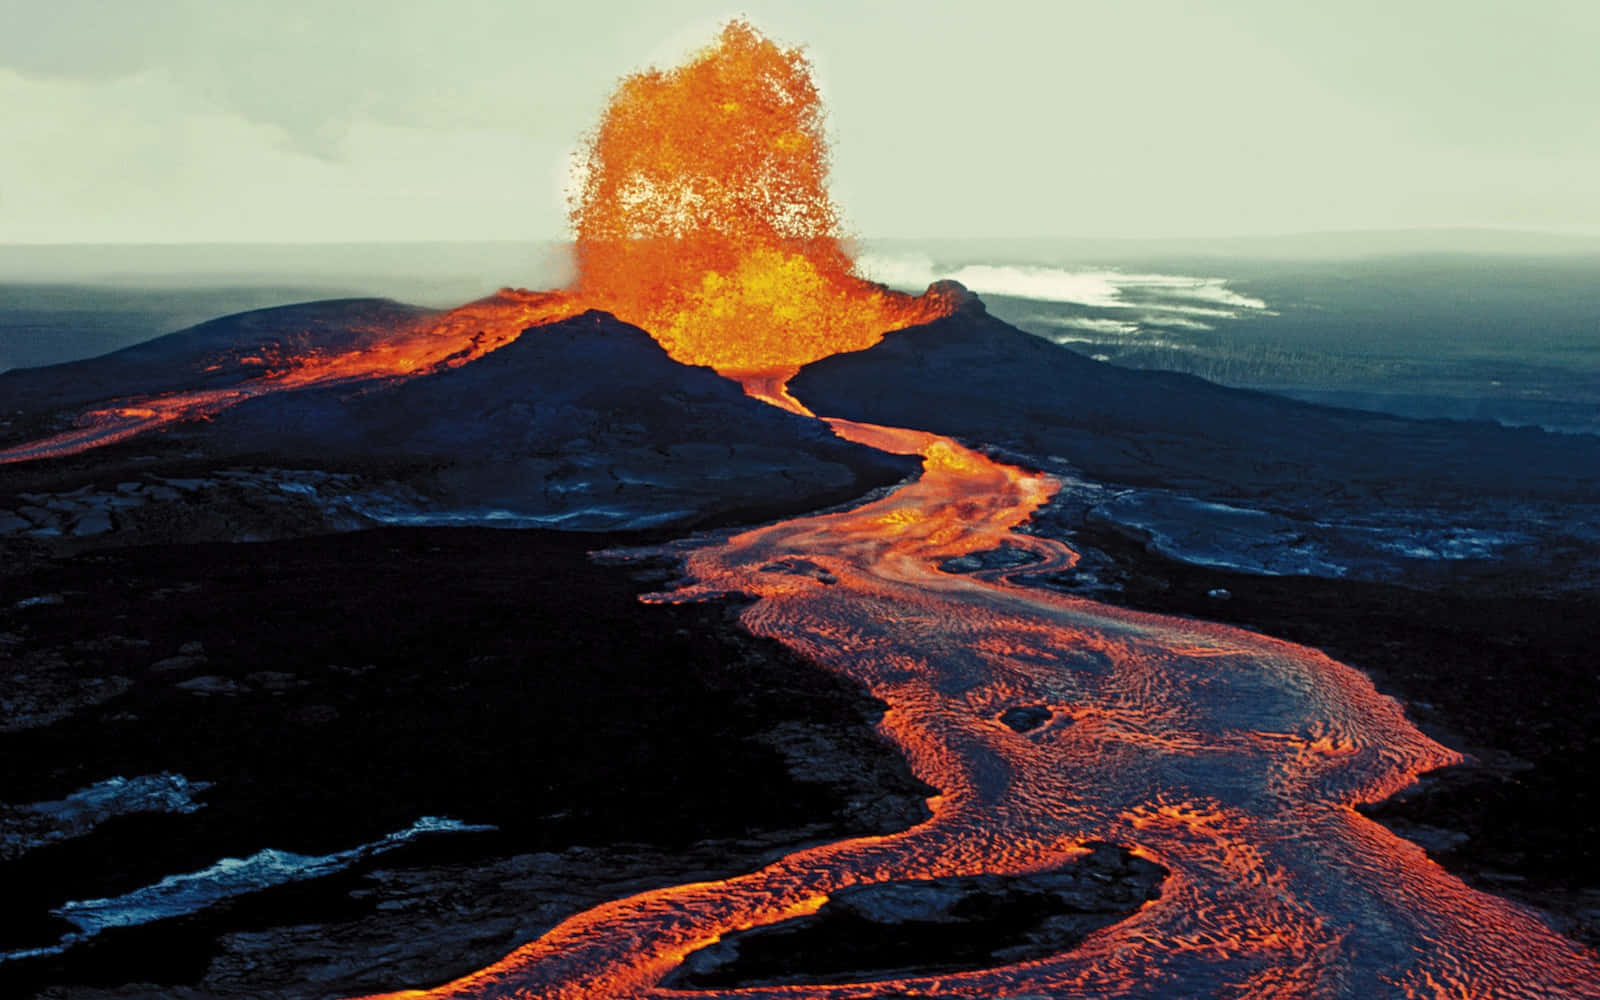 Impresionantevista De Un Volcán Activo En El Océano Pacífico